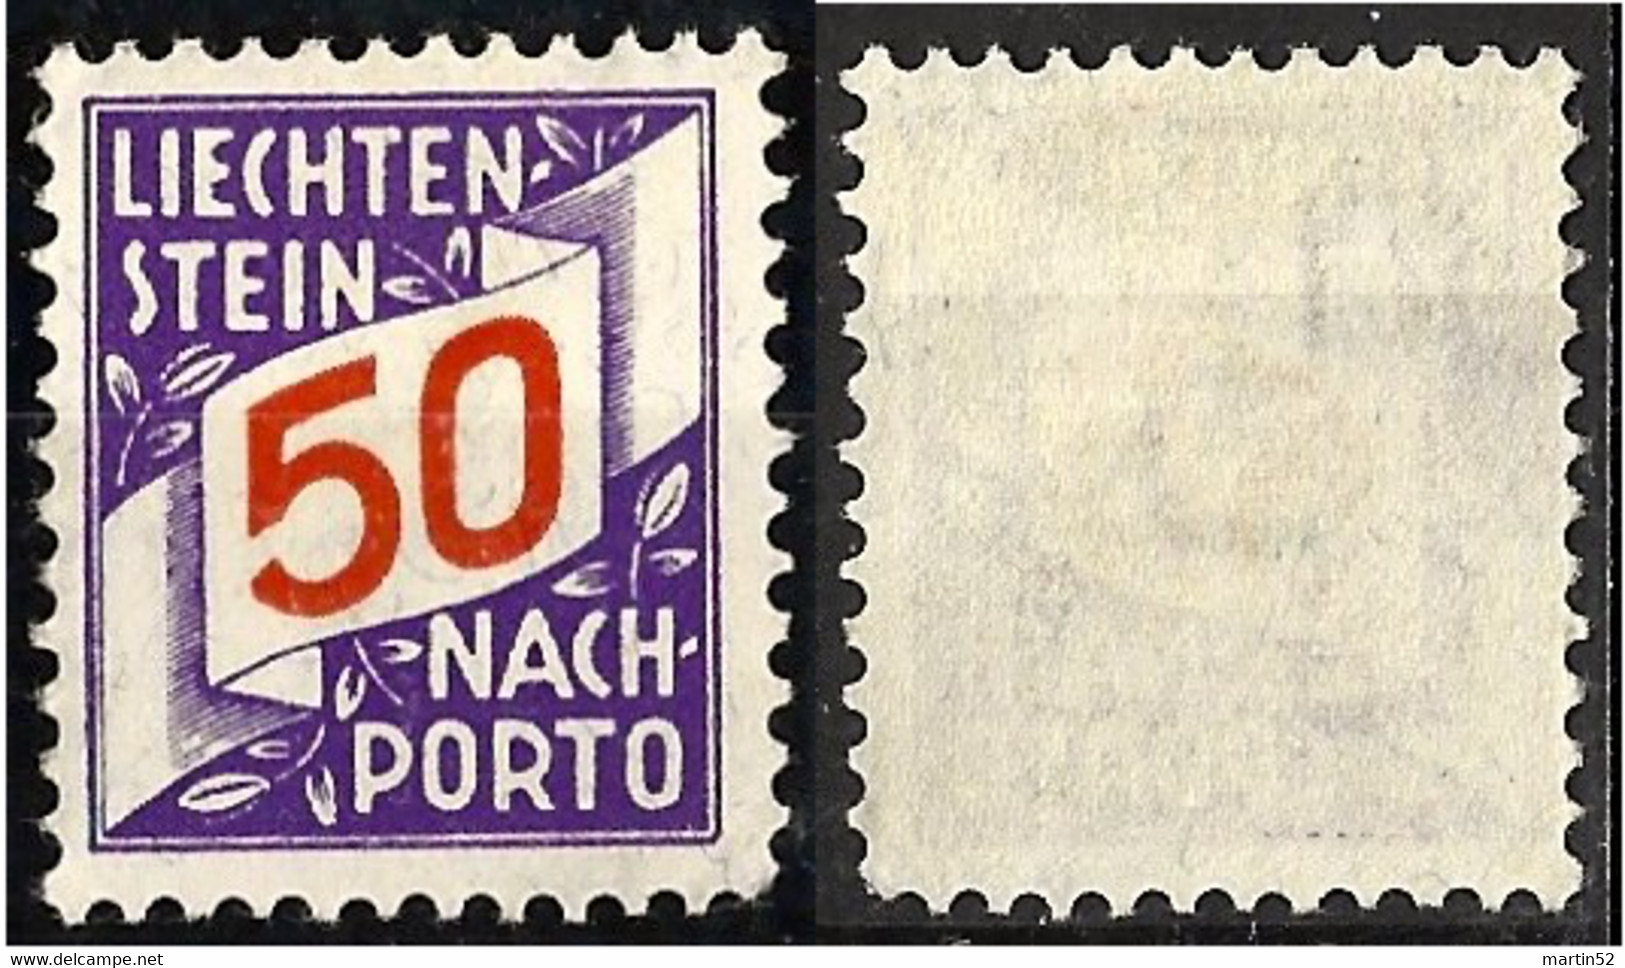 Liechtenstein 1928: ERSTE NACHPORTO-Marke N° 20 (50 Rp) In Schweizer Währung ** Postfrisch MNH (Zu CHF 45.00) - Portomarken